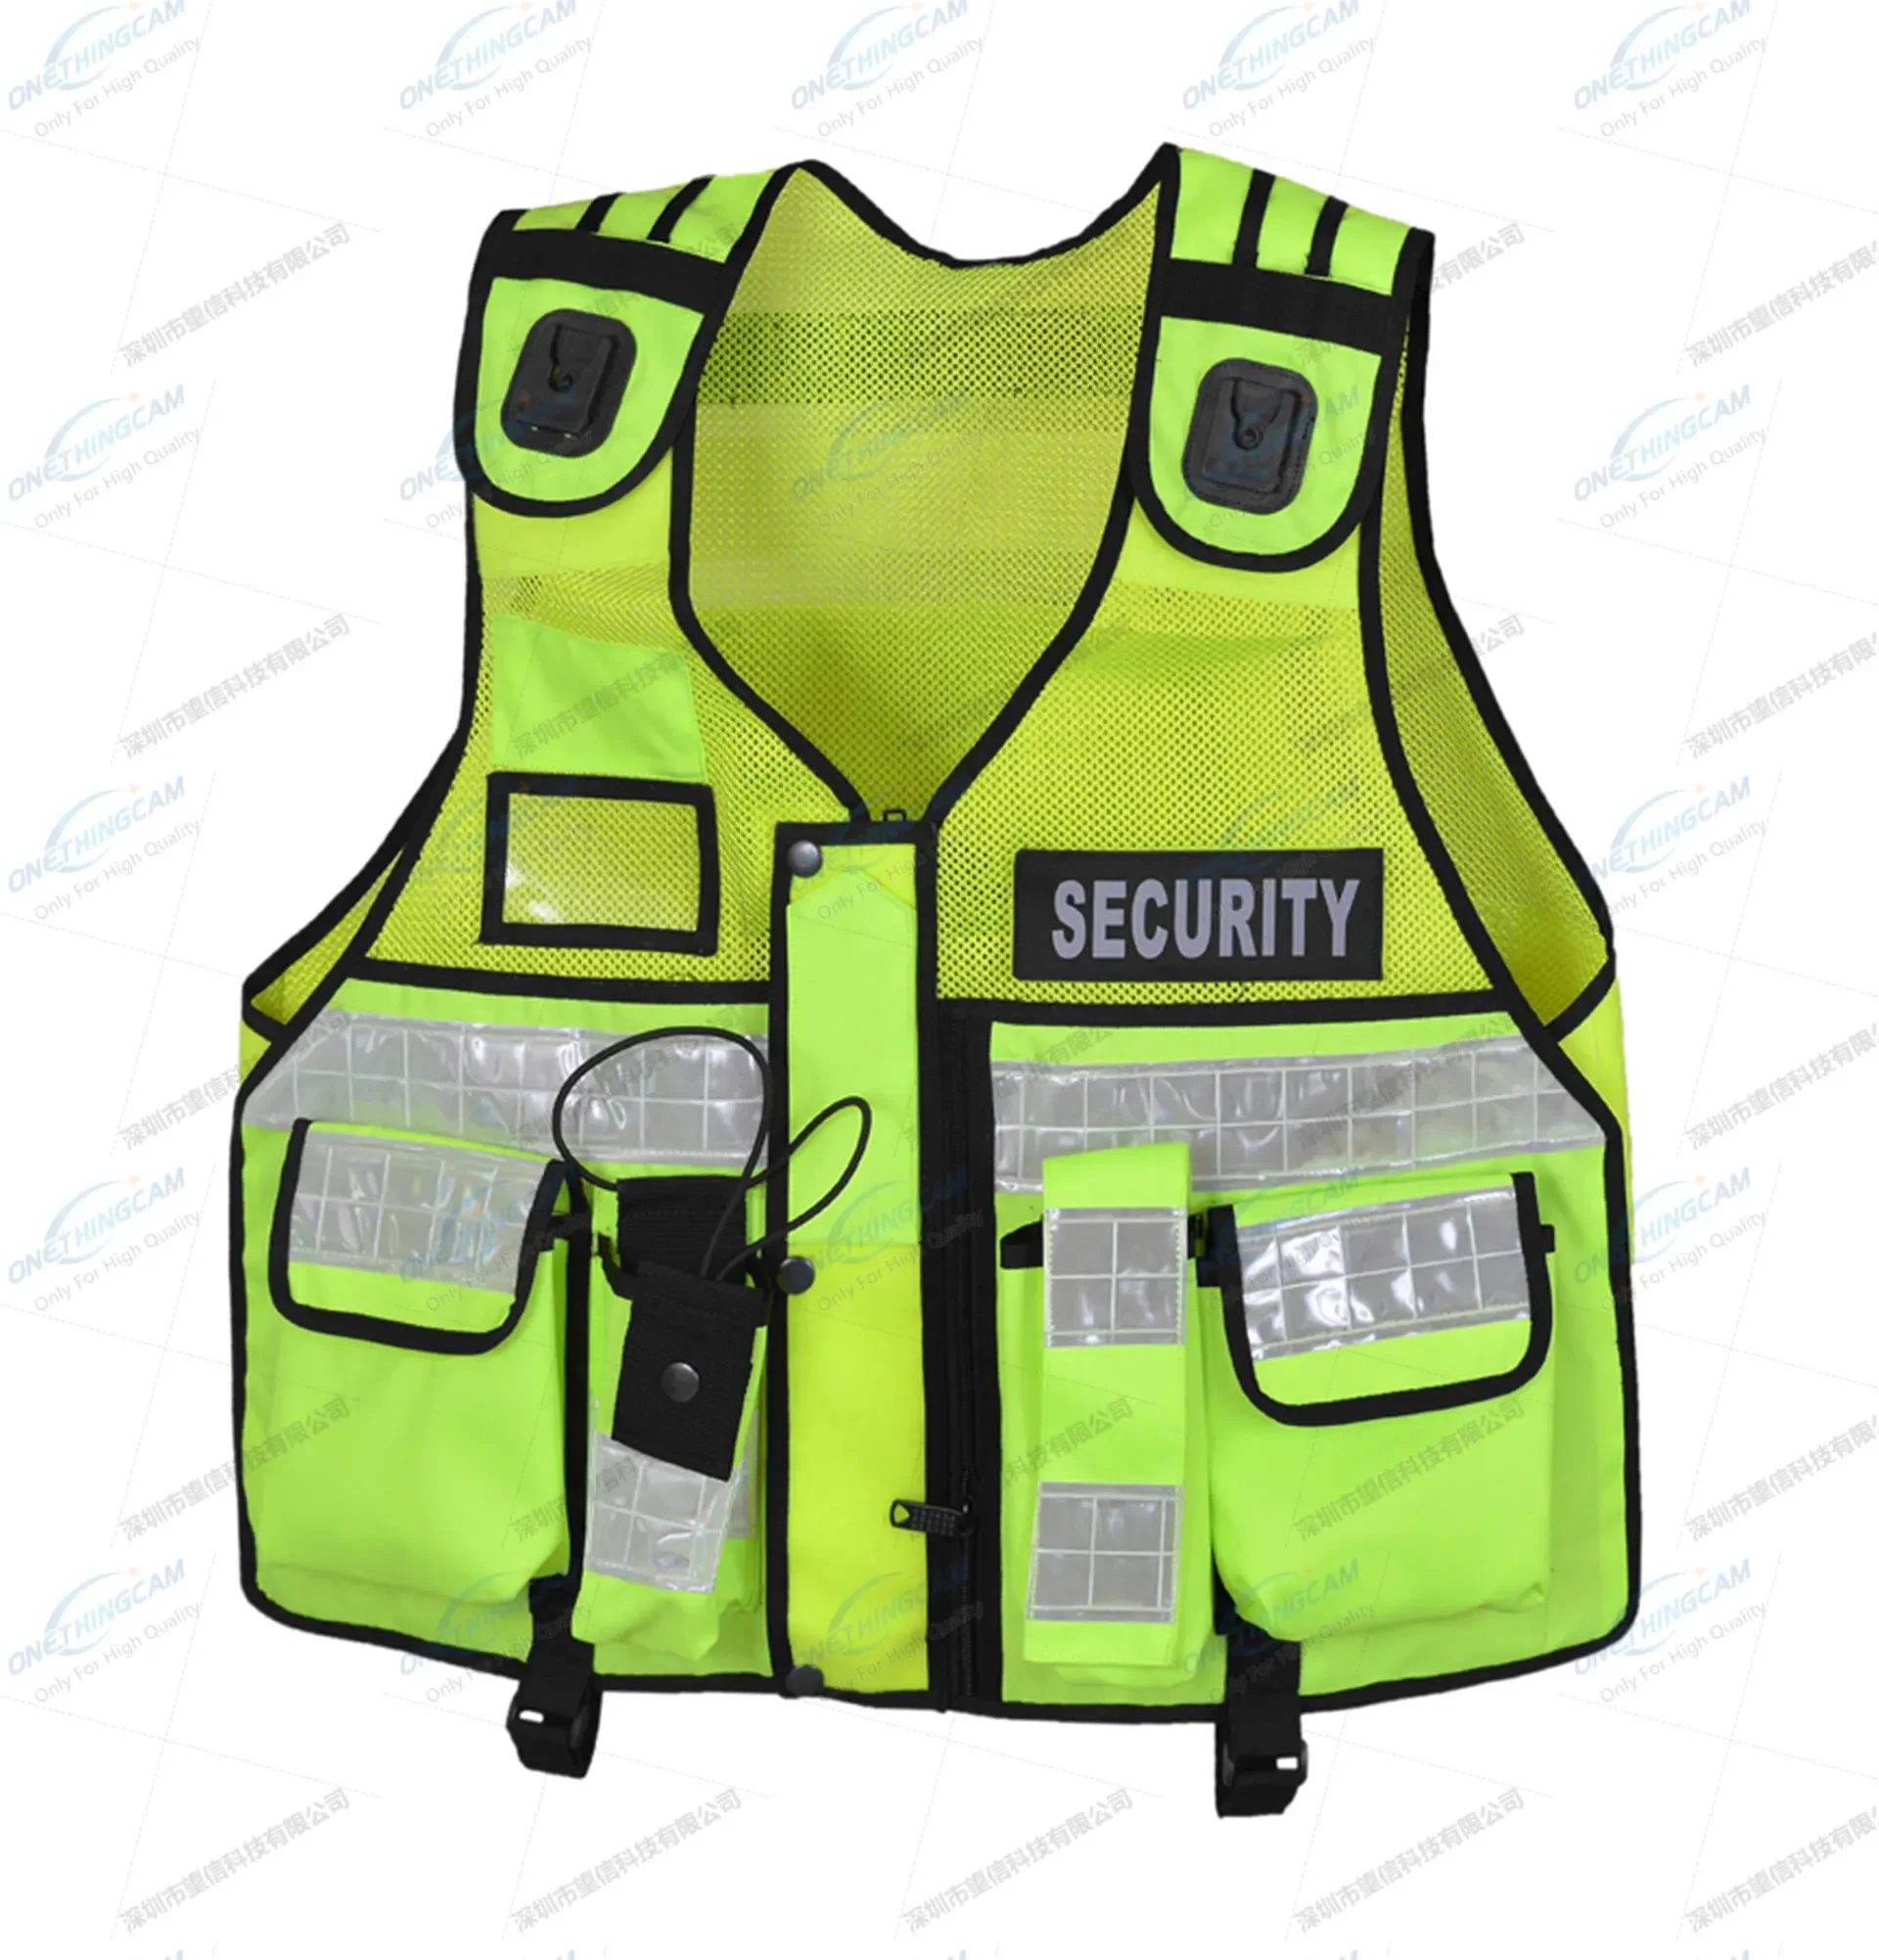 

Hi Viz Tactical Vest Security Reflective Safety Vest With For Enforcement With Pockets Tactical Vest(Green)